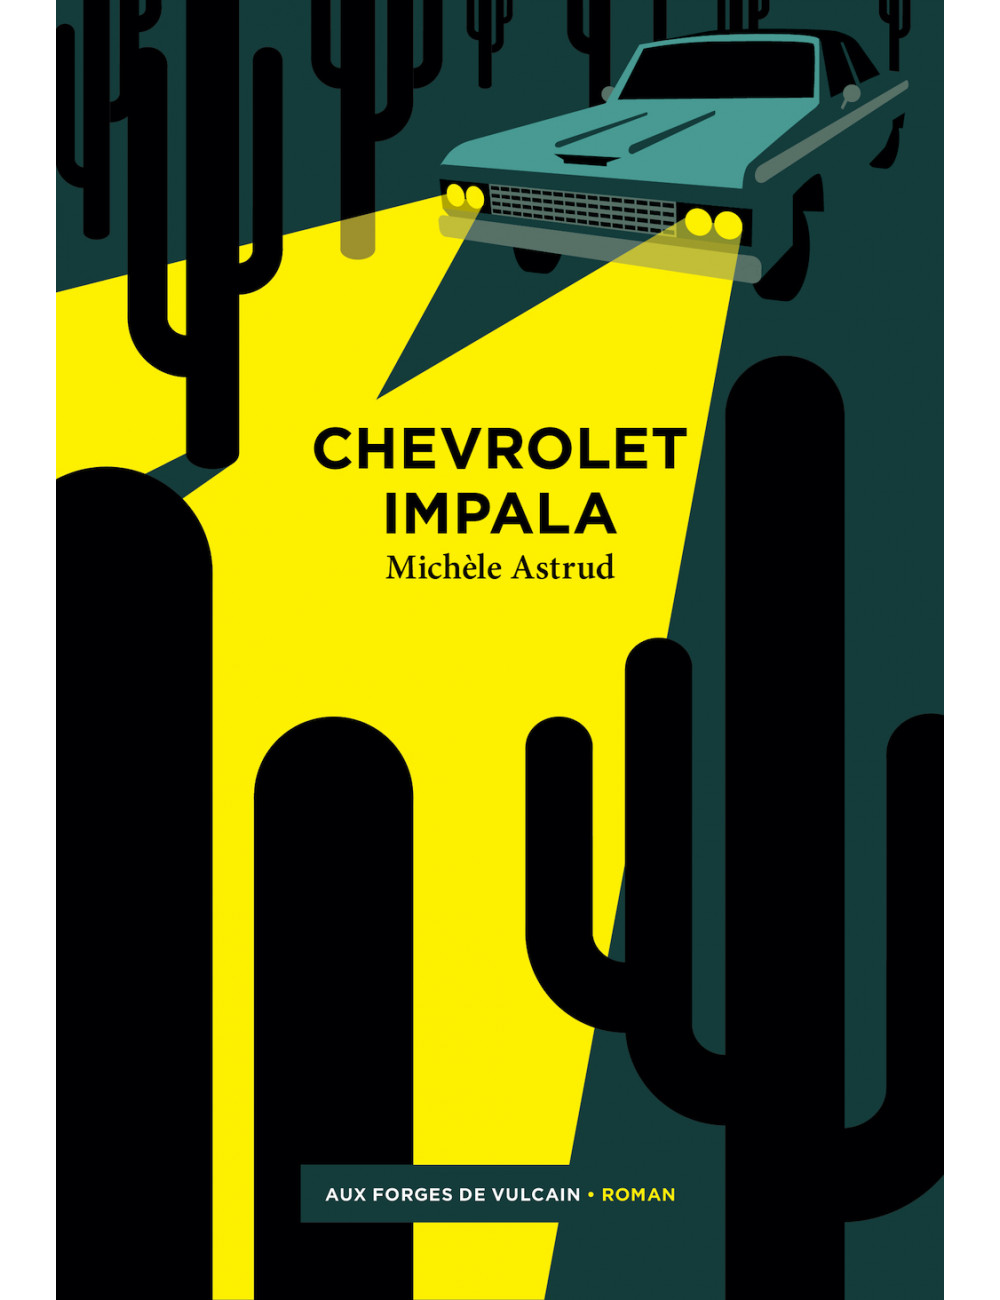 Le livre Chevrolet Impala de Michèle Astrud forges de vulcain